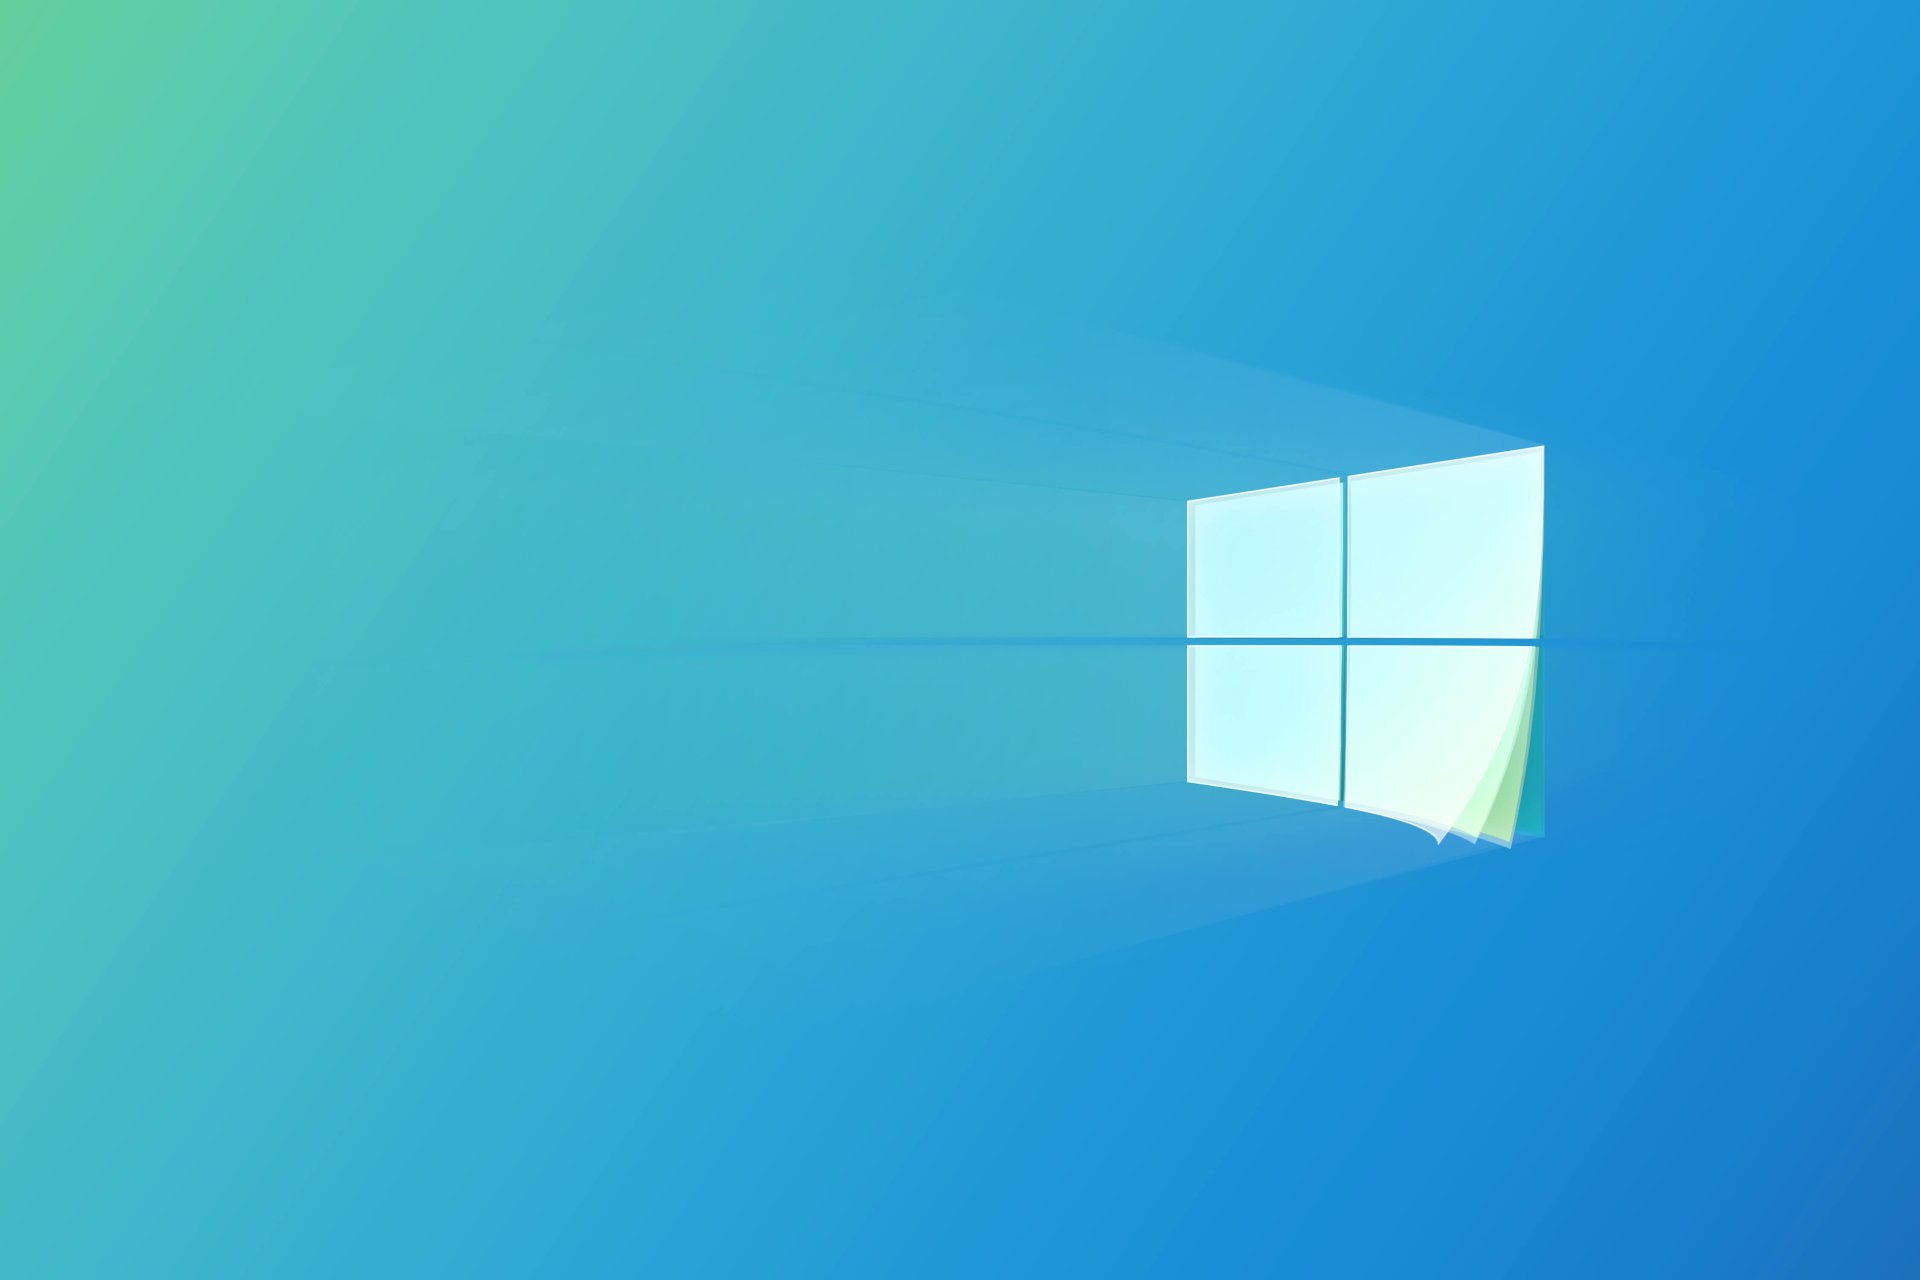 Windows 10 Logo là điểm nhấn cho mỗi thiết bị chạy Windows 10 của bạn. Hình ảnh thể hiện sự hiện đại và sáng tạo, và đây là logo được nhiều người yêu thích nhất trên thế giới.